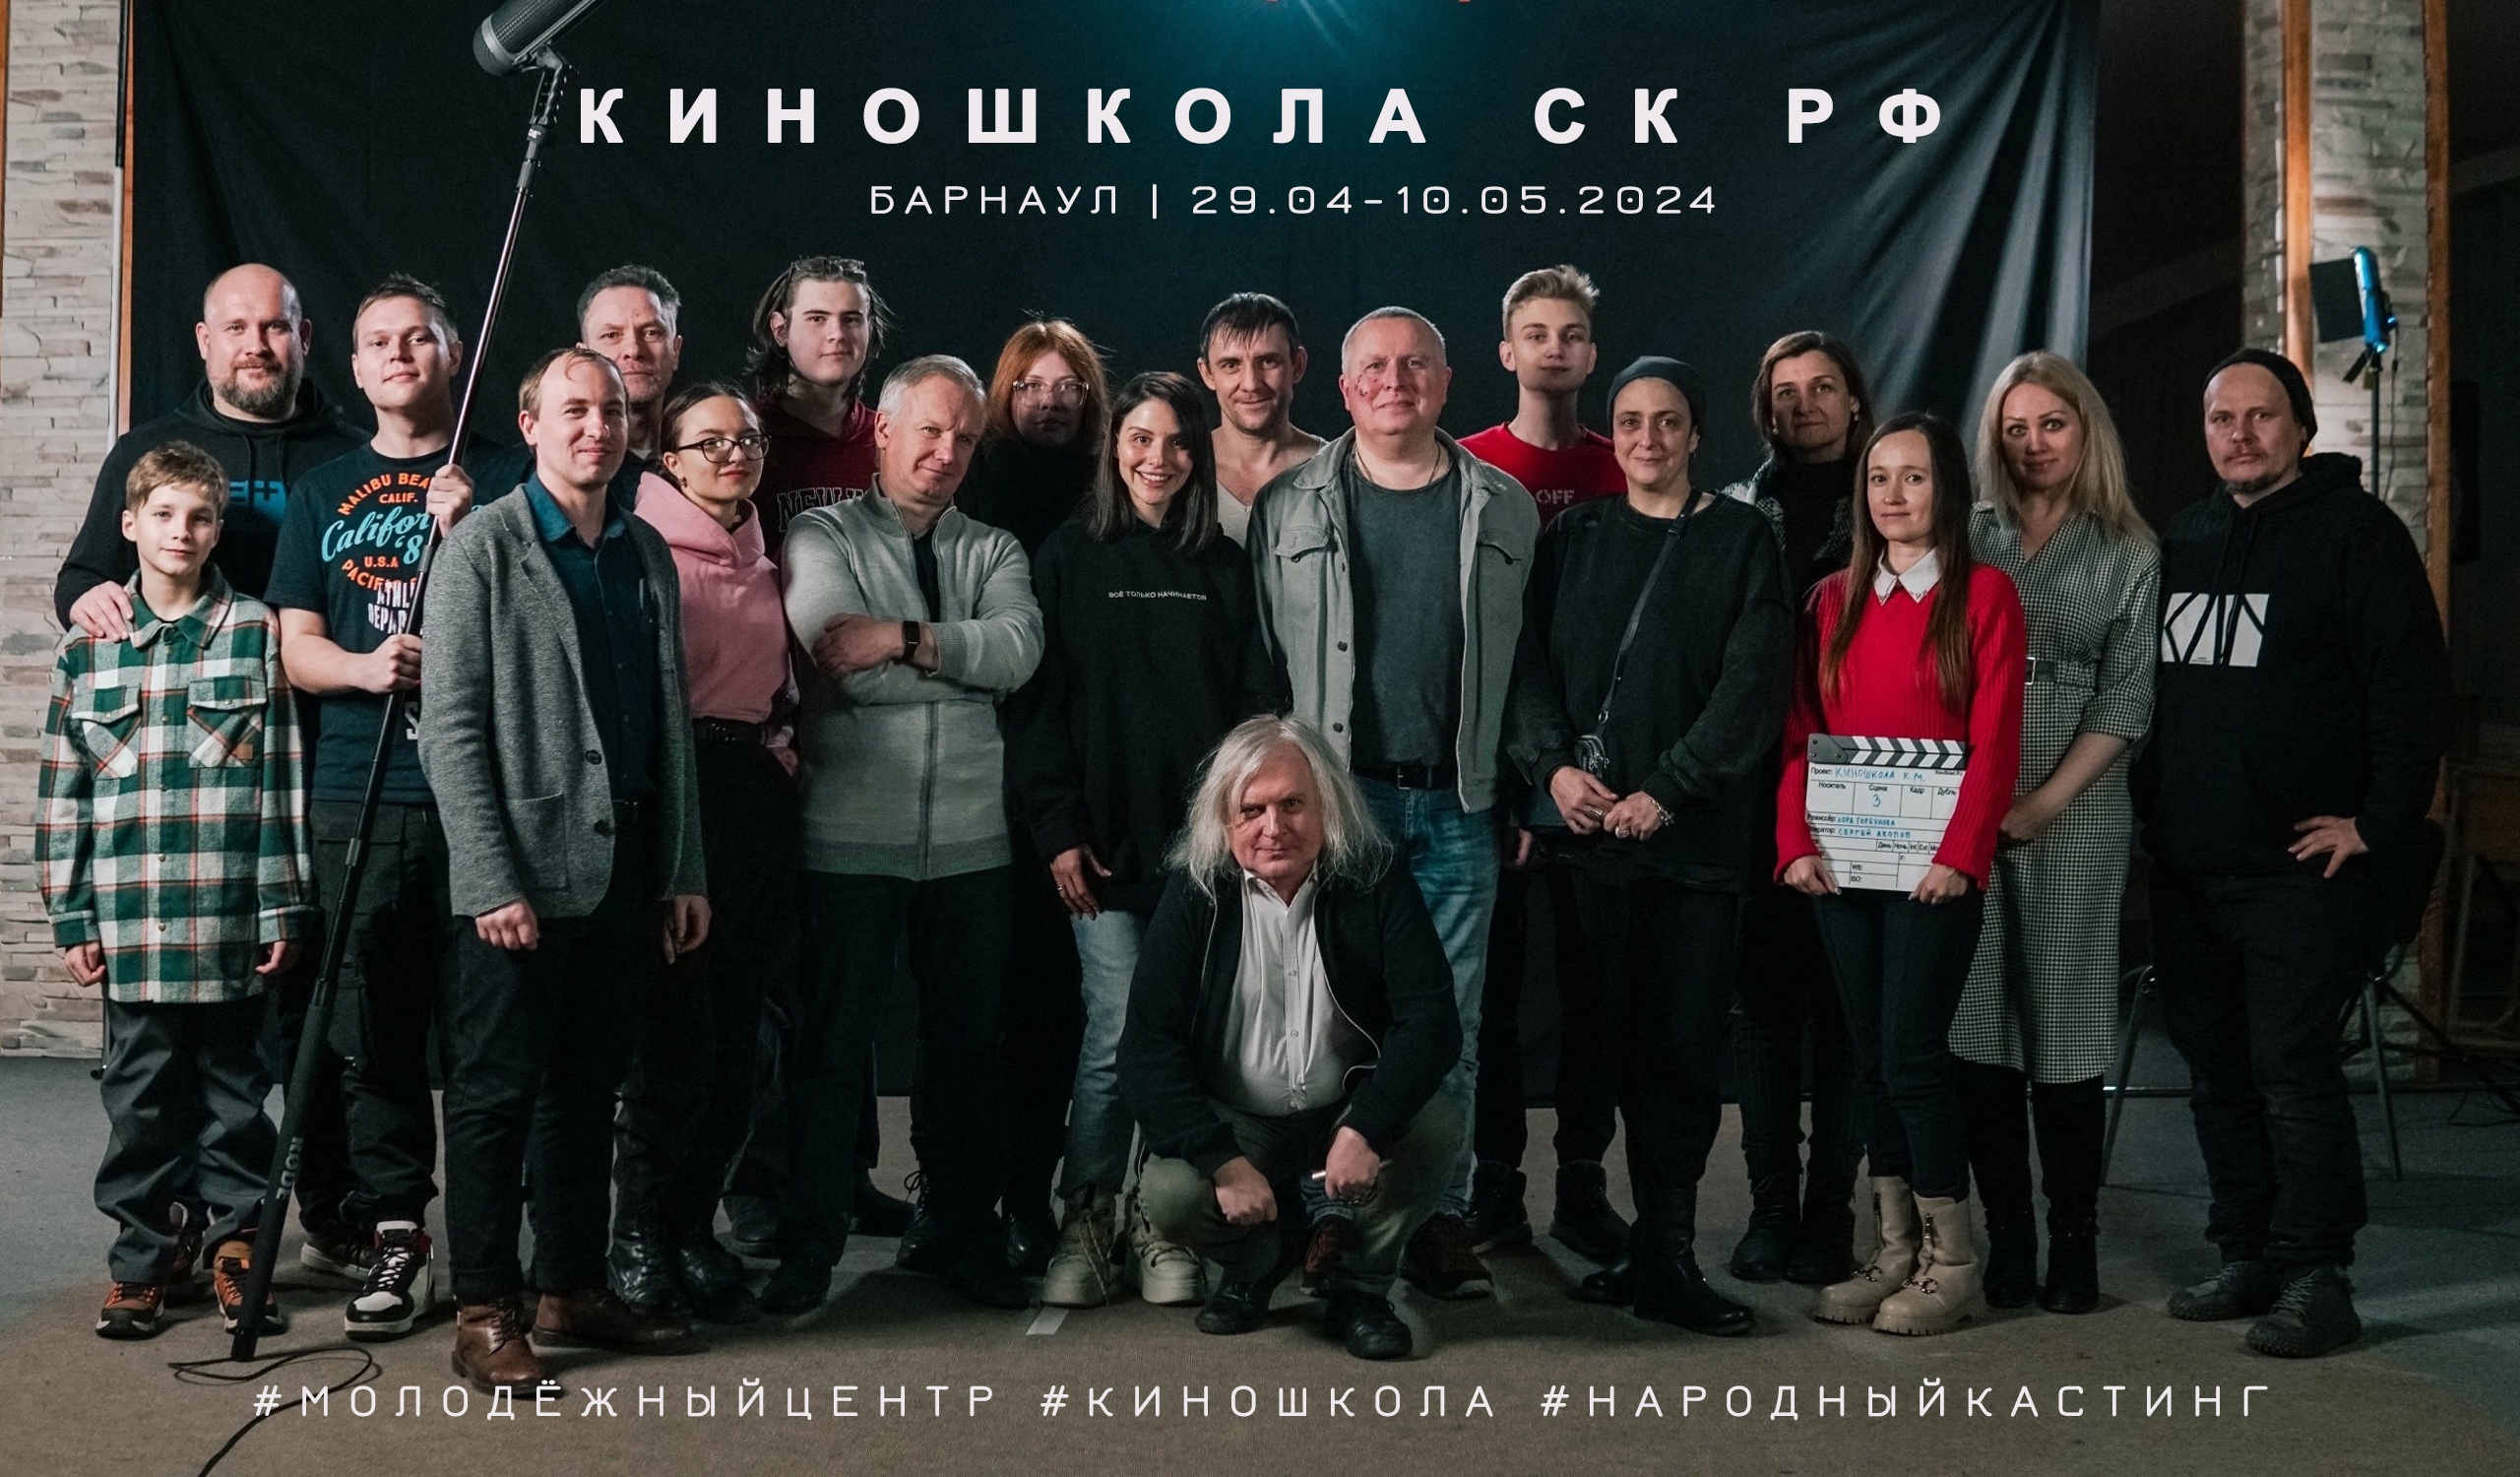 Киношкола Союза кинематографистов Российской Федерации начинает приём заявок в Барнауле!